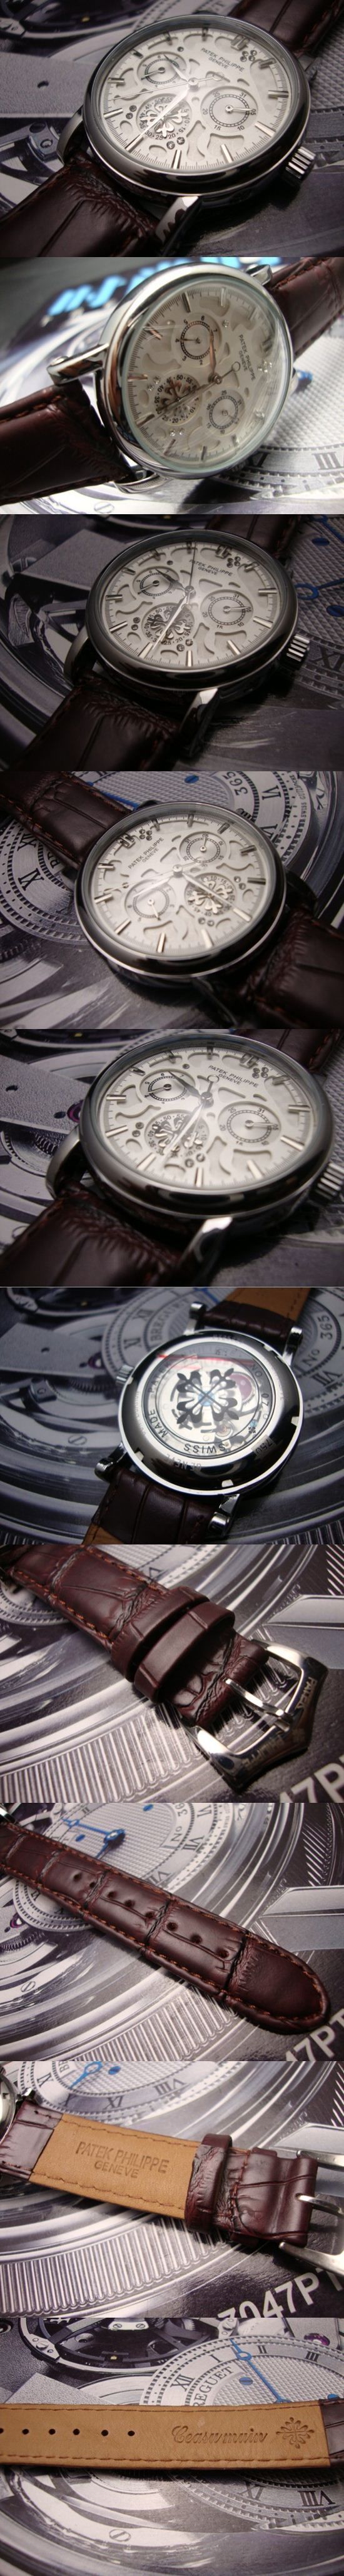 おしゃれなブランド時計がPATEK PHILIPPE-パテック フィリップ腕時計 パテック フィリップ 男/女腕時計 PATEK-PHILIPPE-N-002A を提供します.